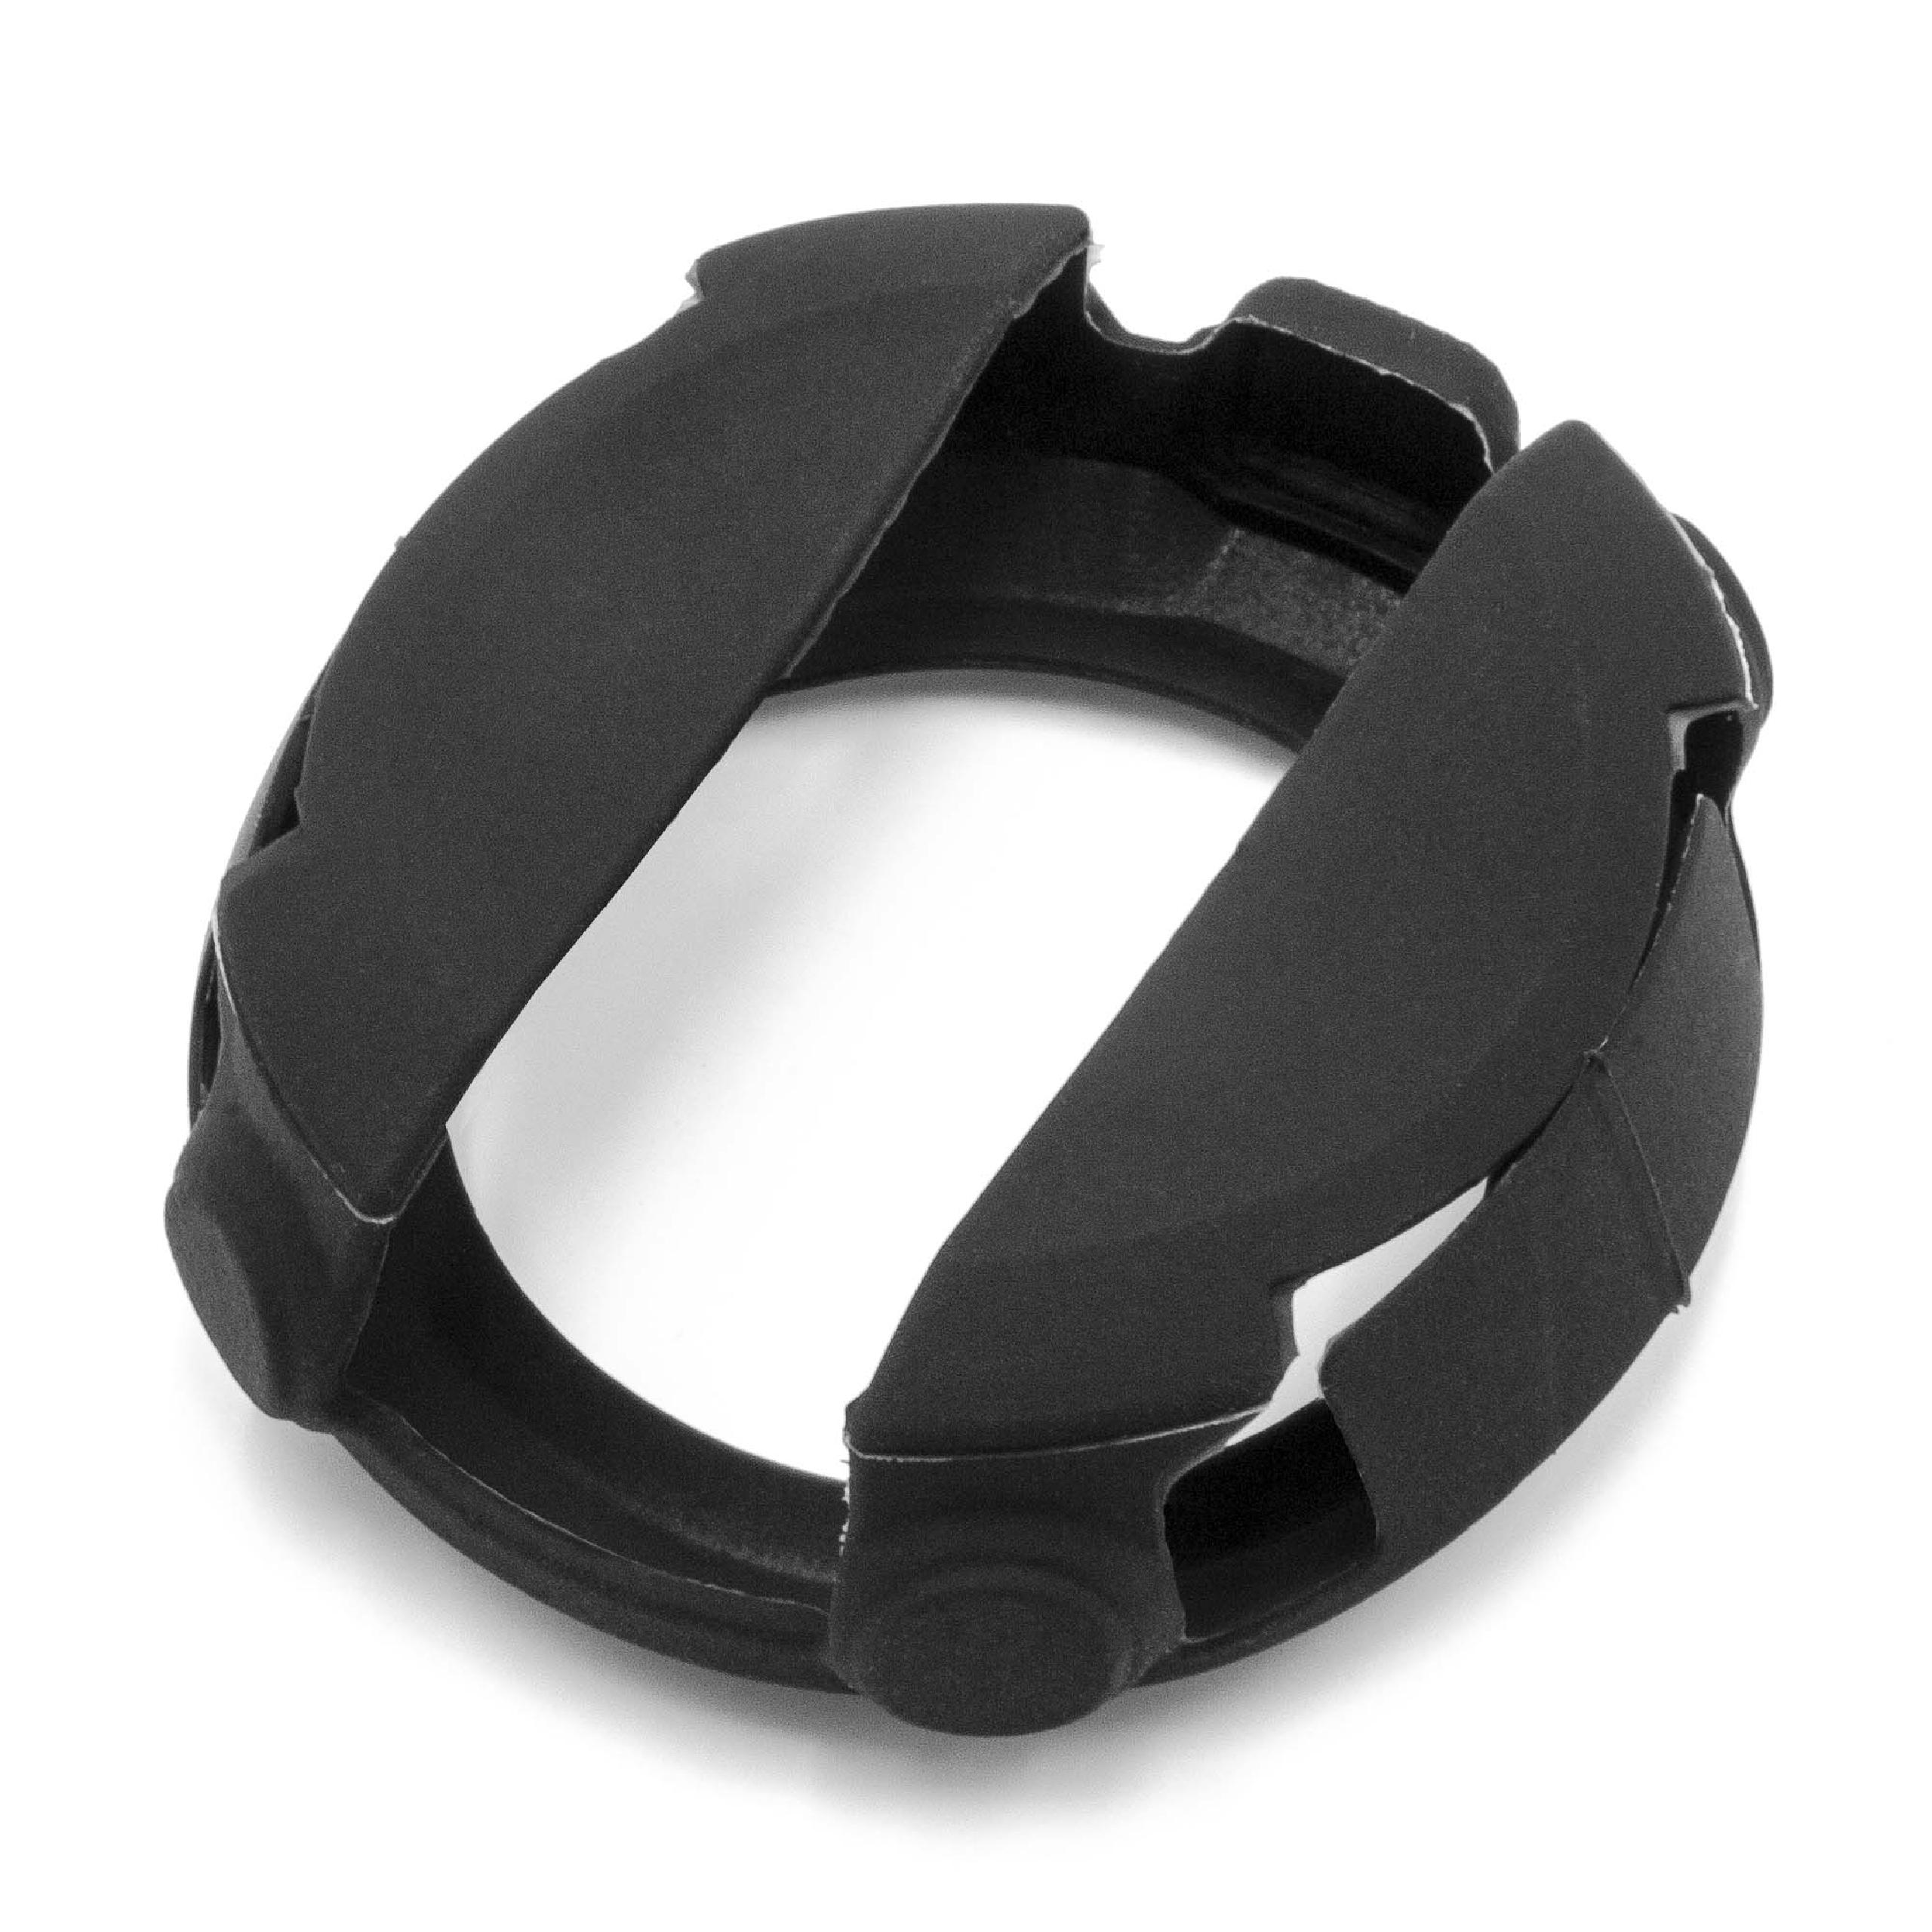 Custodia per Garmin D2 Bravo Fitnesstracker - cover nero silicone